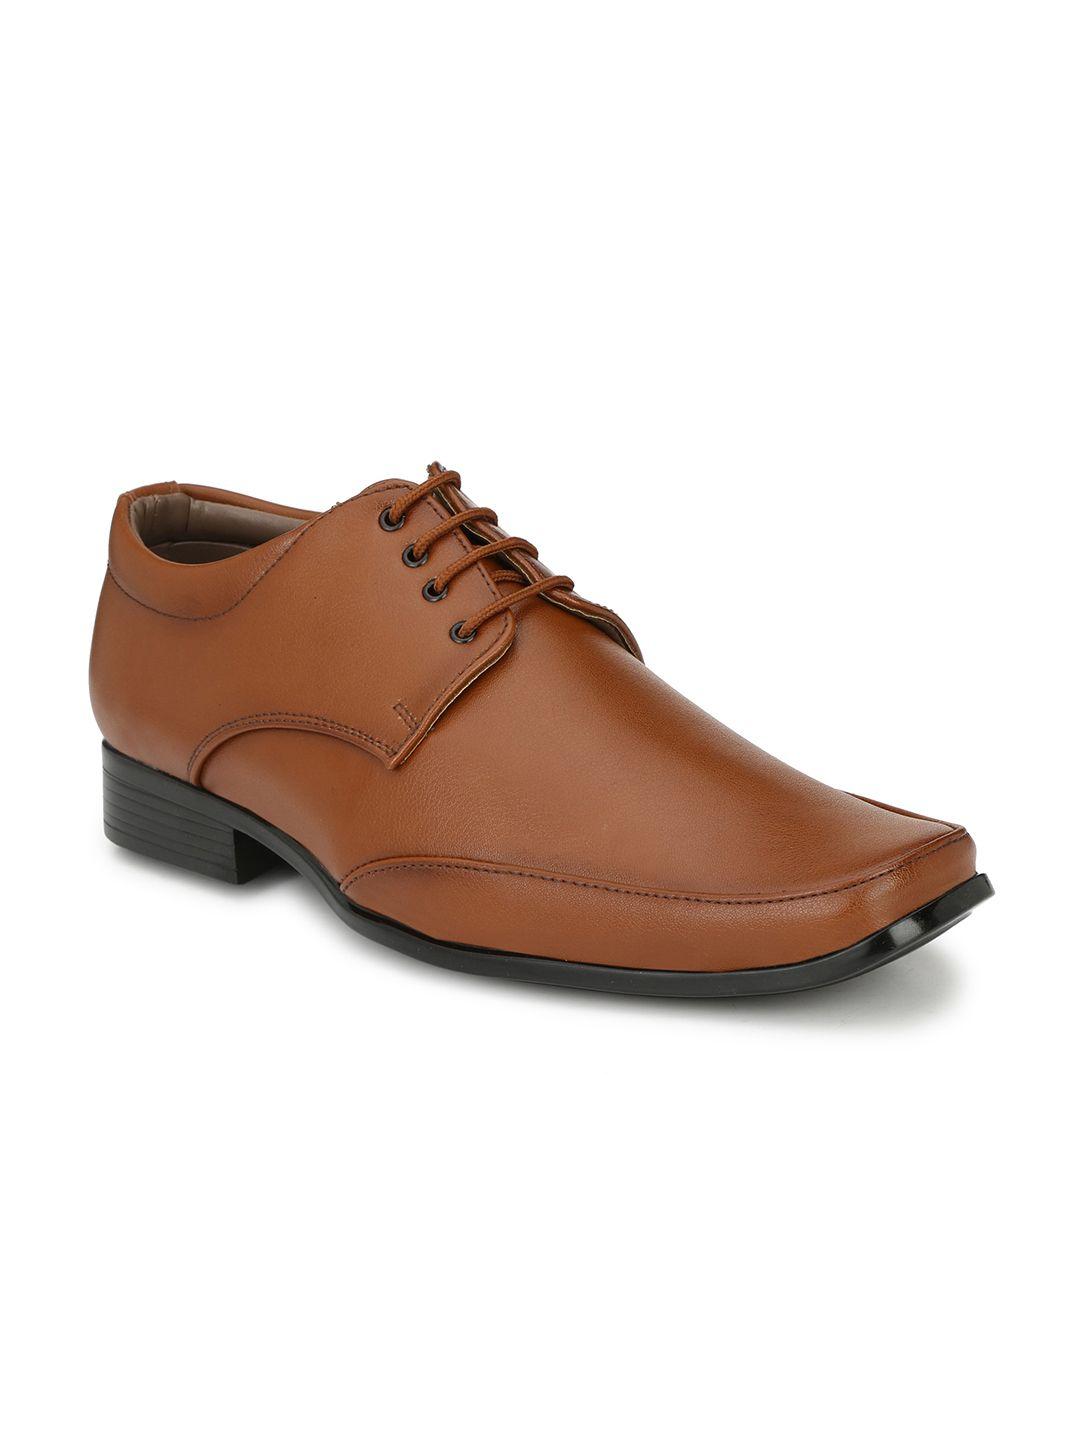 sir-corbett-men-tan-brown-solid-formal-derbys